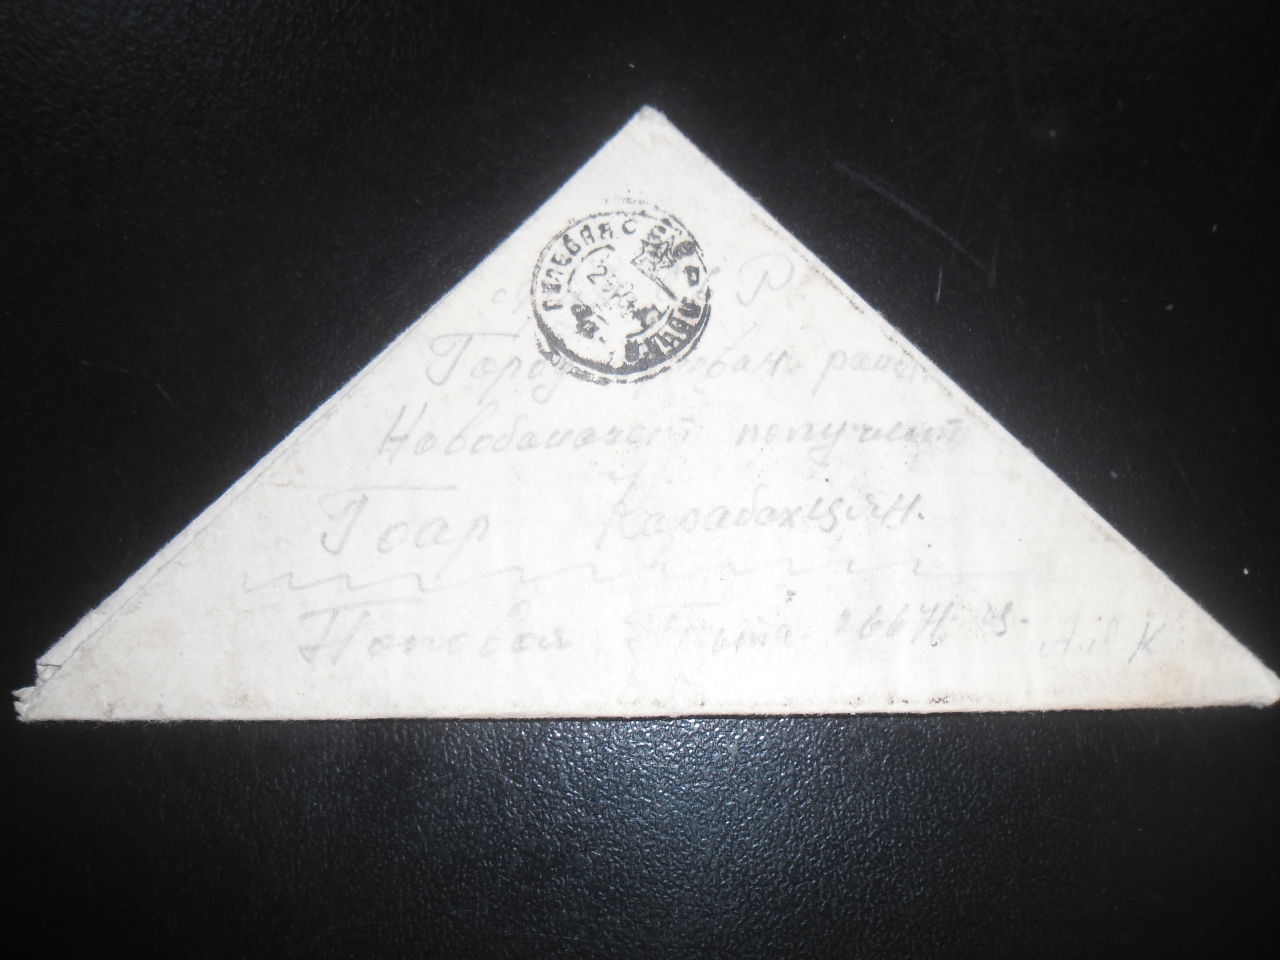 Նամակ՝ Արտավազդ Առաքելի Ղարաբաղցյանից (Հայրենական պատերազմի մասնակից) հարազատներին